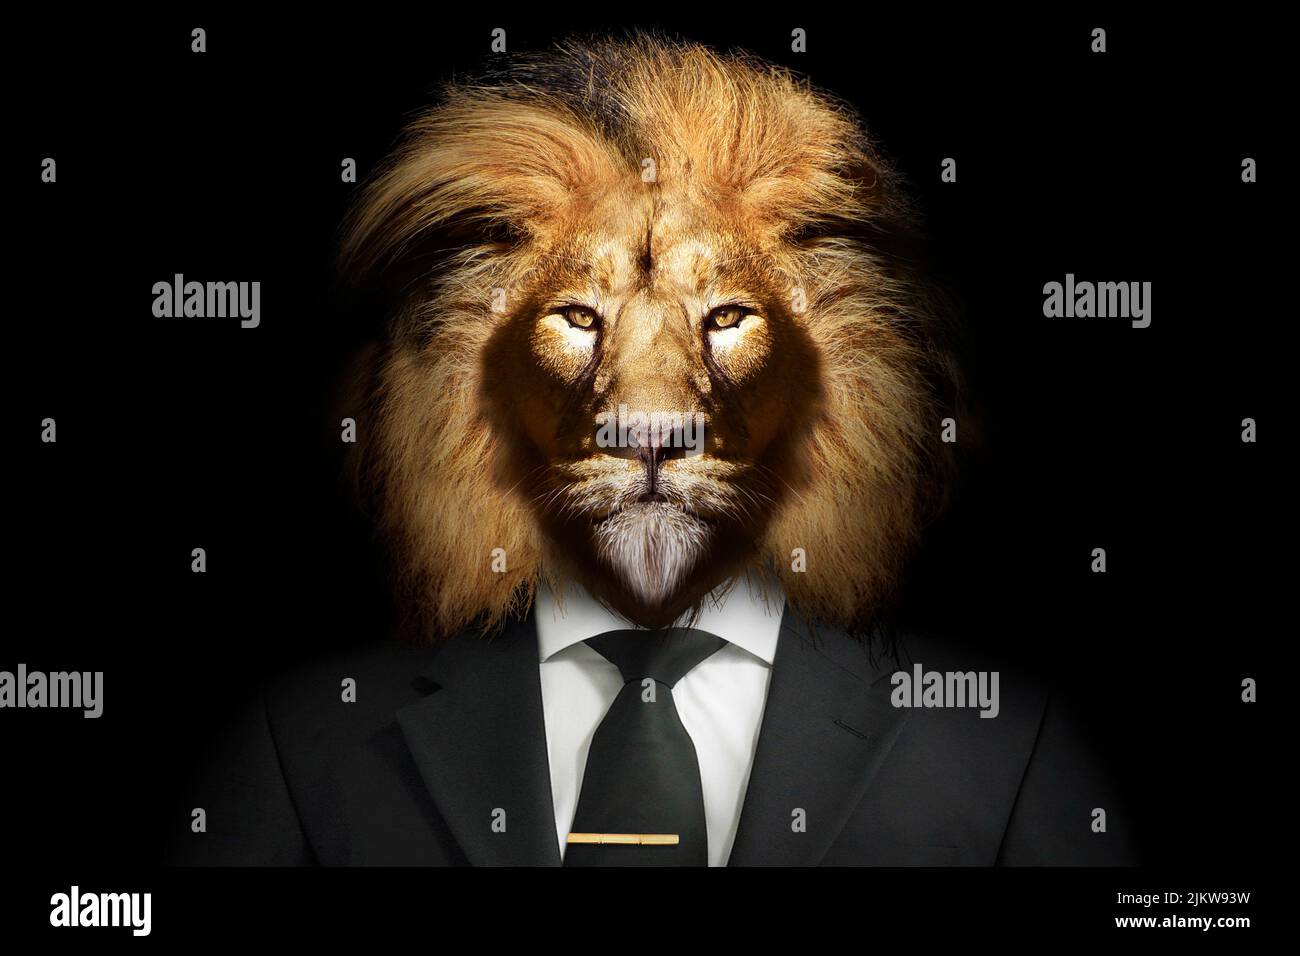 Ein Löwe mit einem edlen Look in einem Anzug Stockfoto